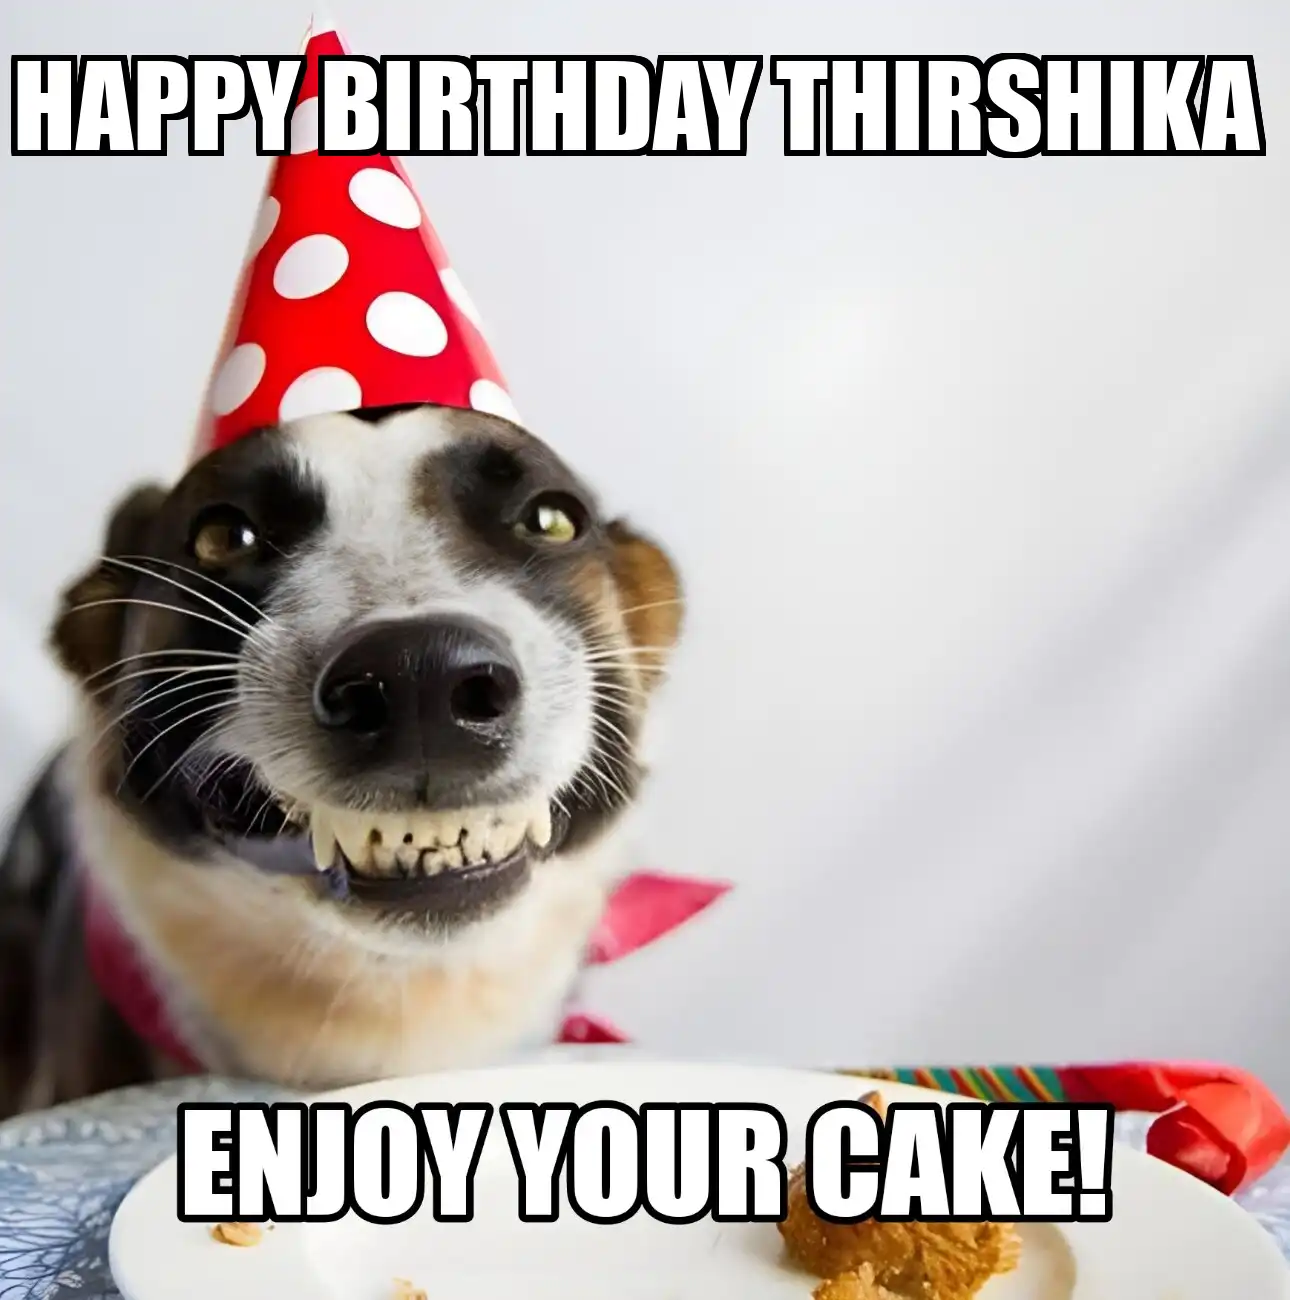 Happy Birthday Thirshika Enjoy Your Cake Dog Meme